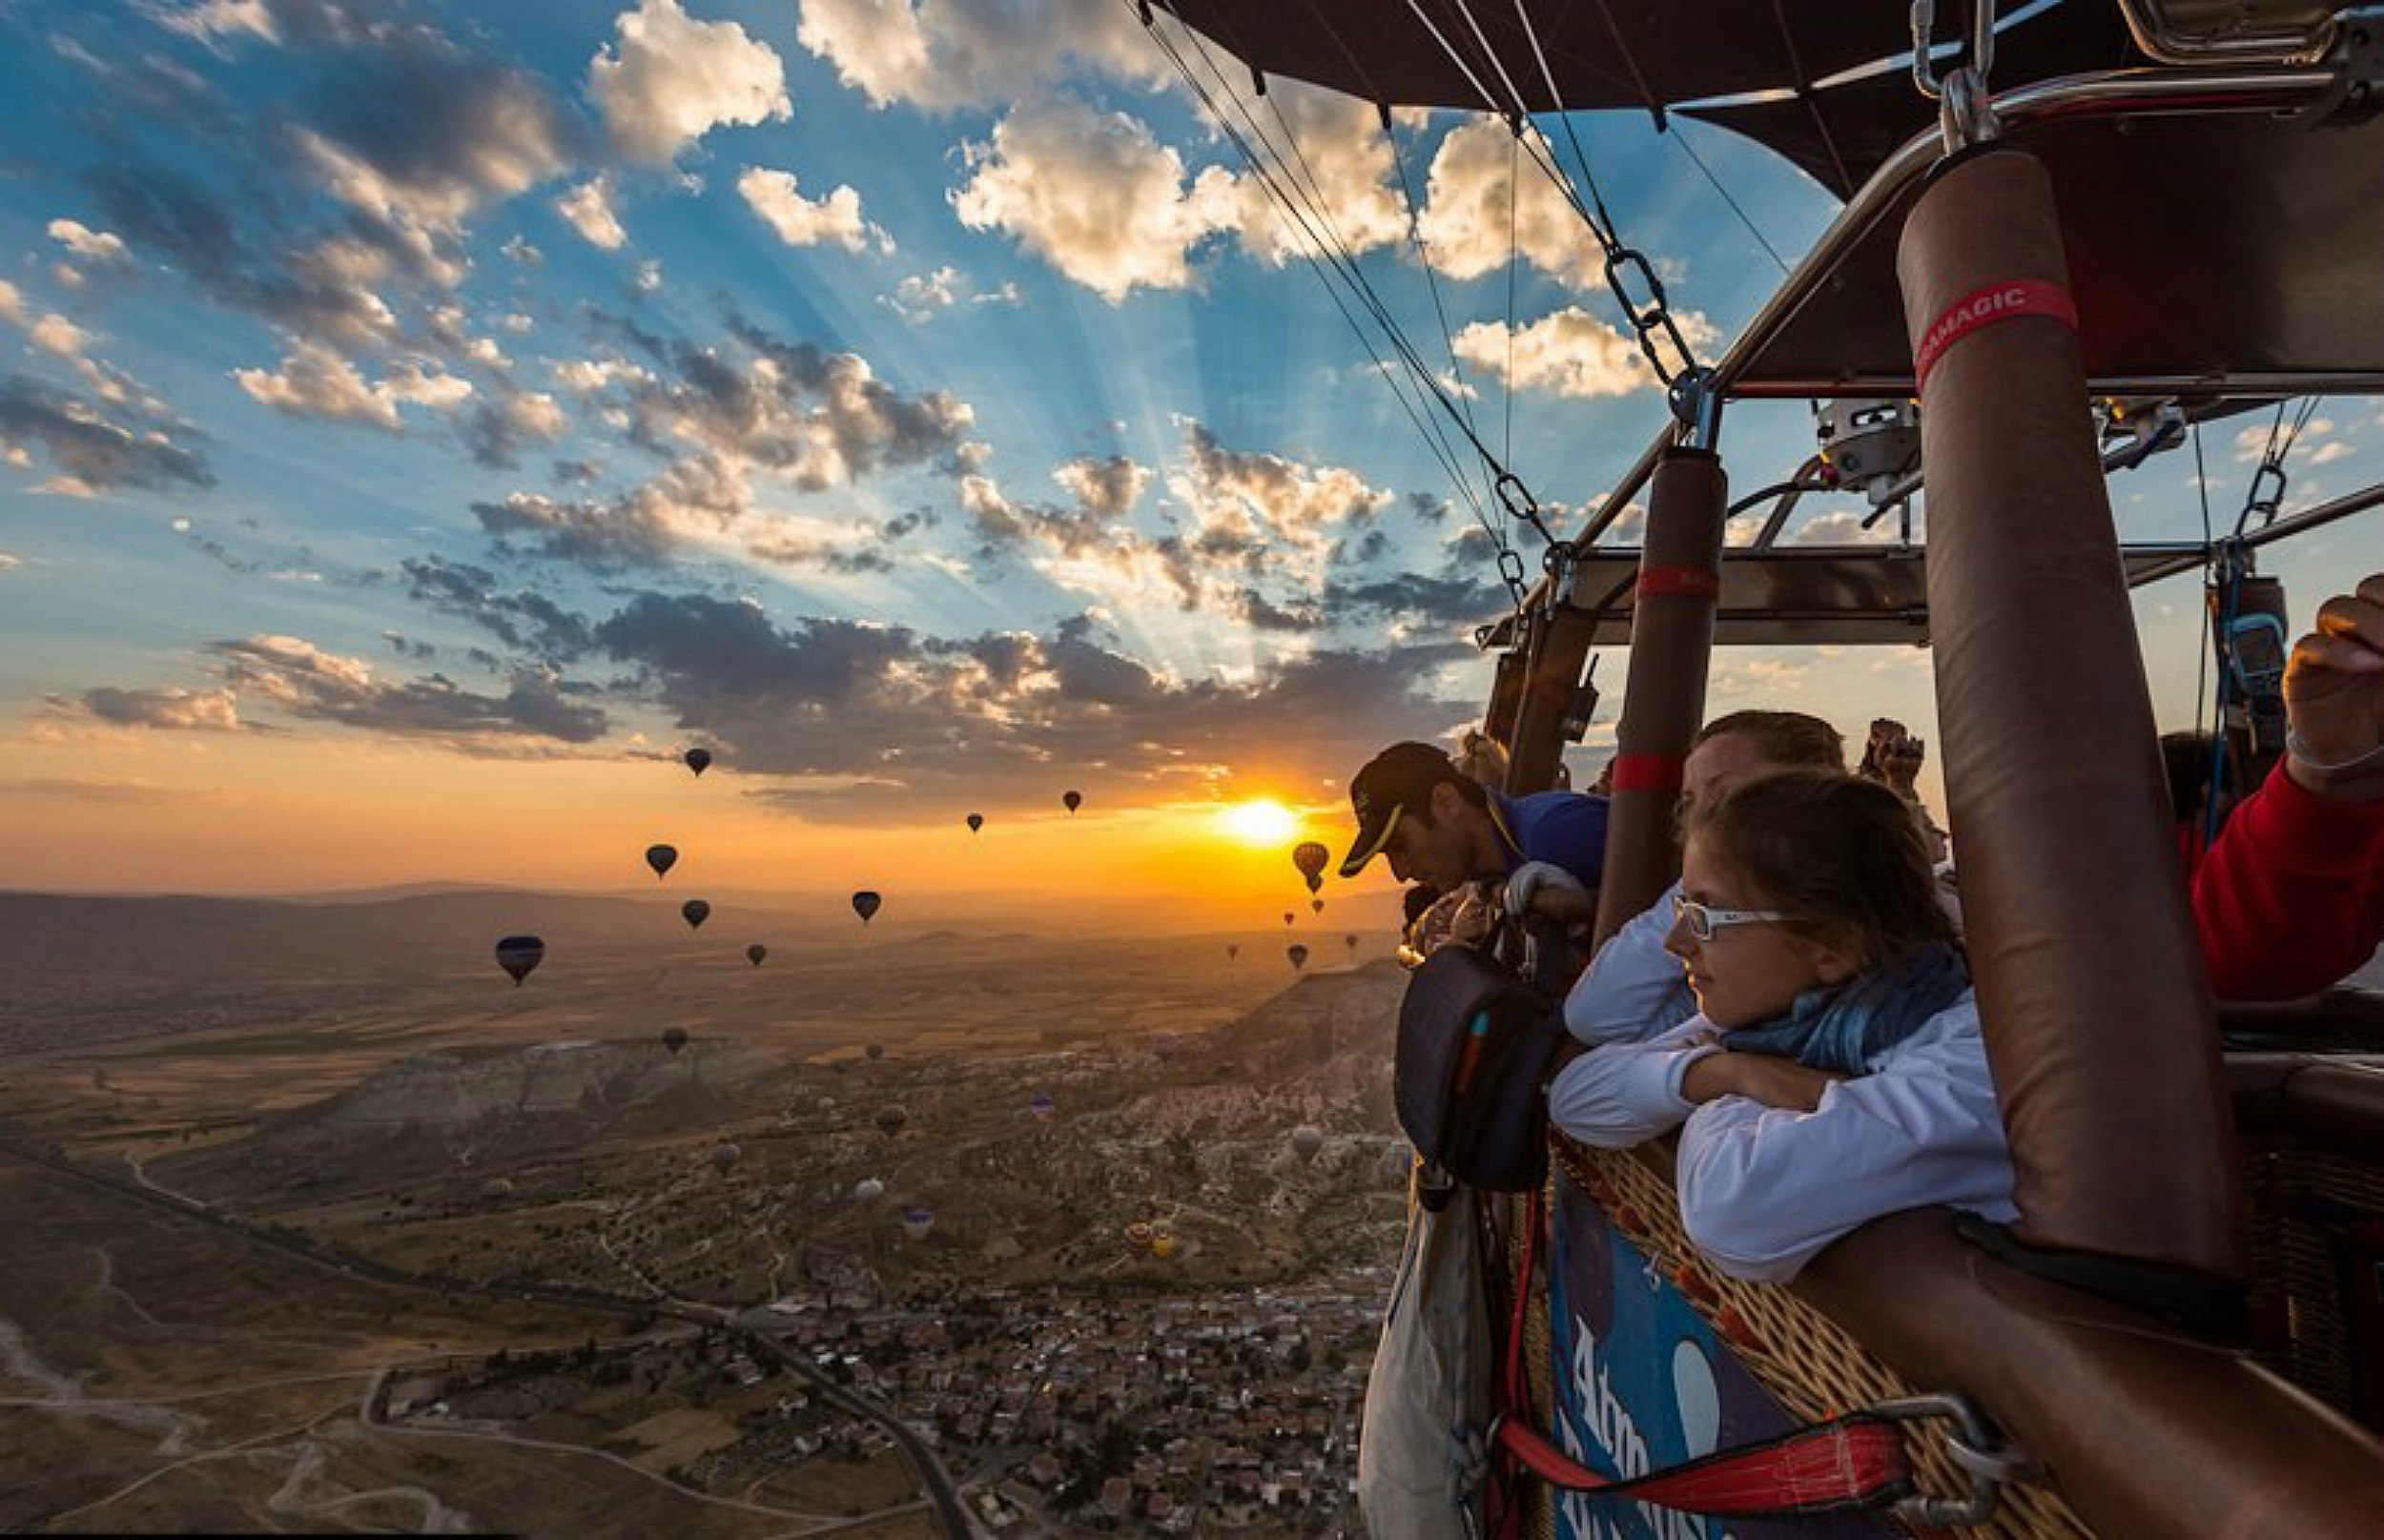 Видео лучшее путешествие. Каппадокия. Полет на воздушном шаре в Каппадокии. Смотровые площадки в Каппадокии. Рассвет на воздушном шаре в Каппадокии.